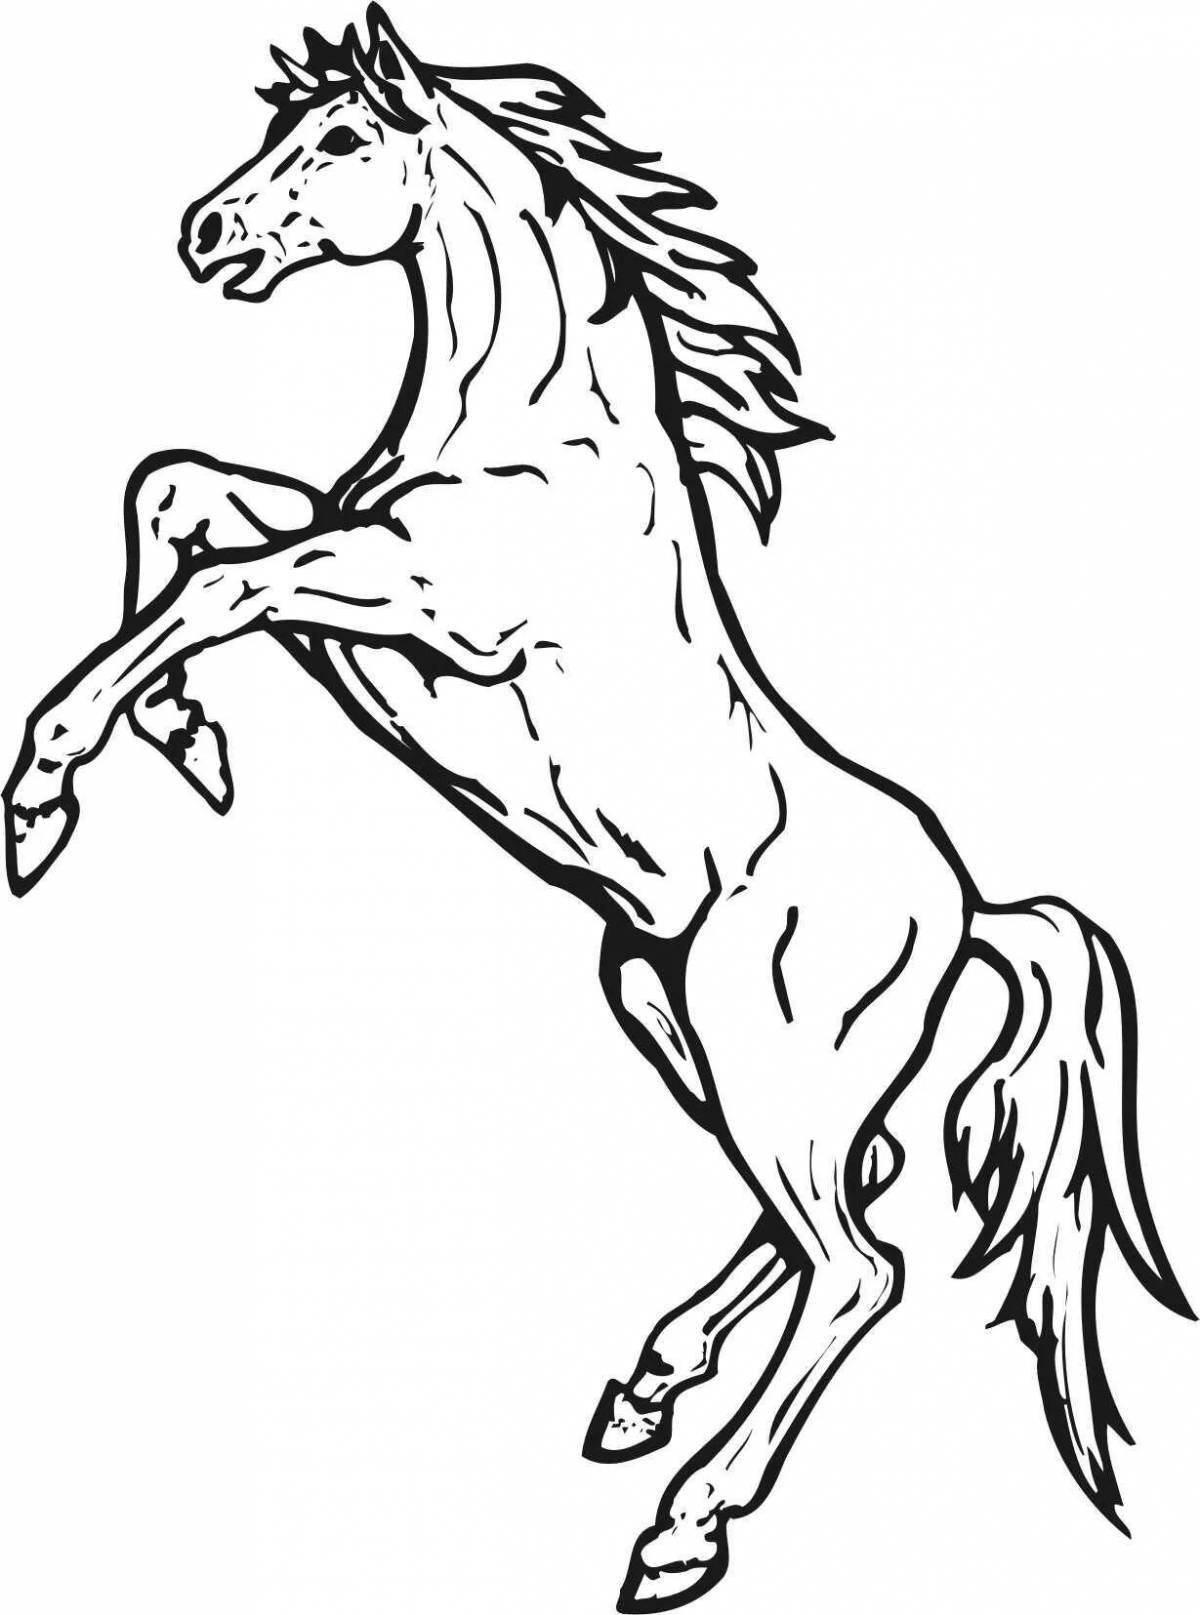 Раскраска роскошная вздыбленная лошадь